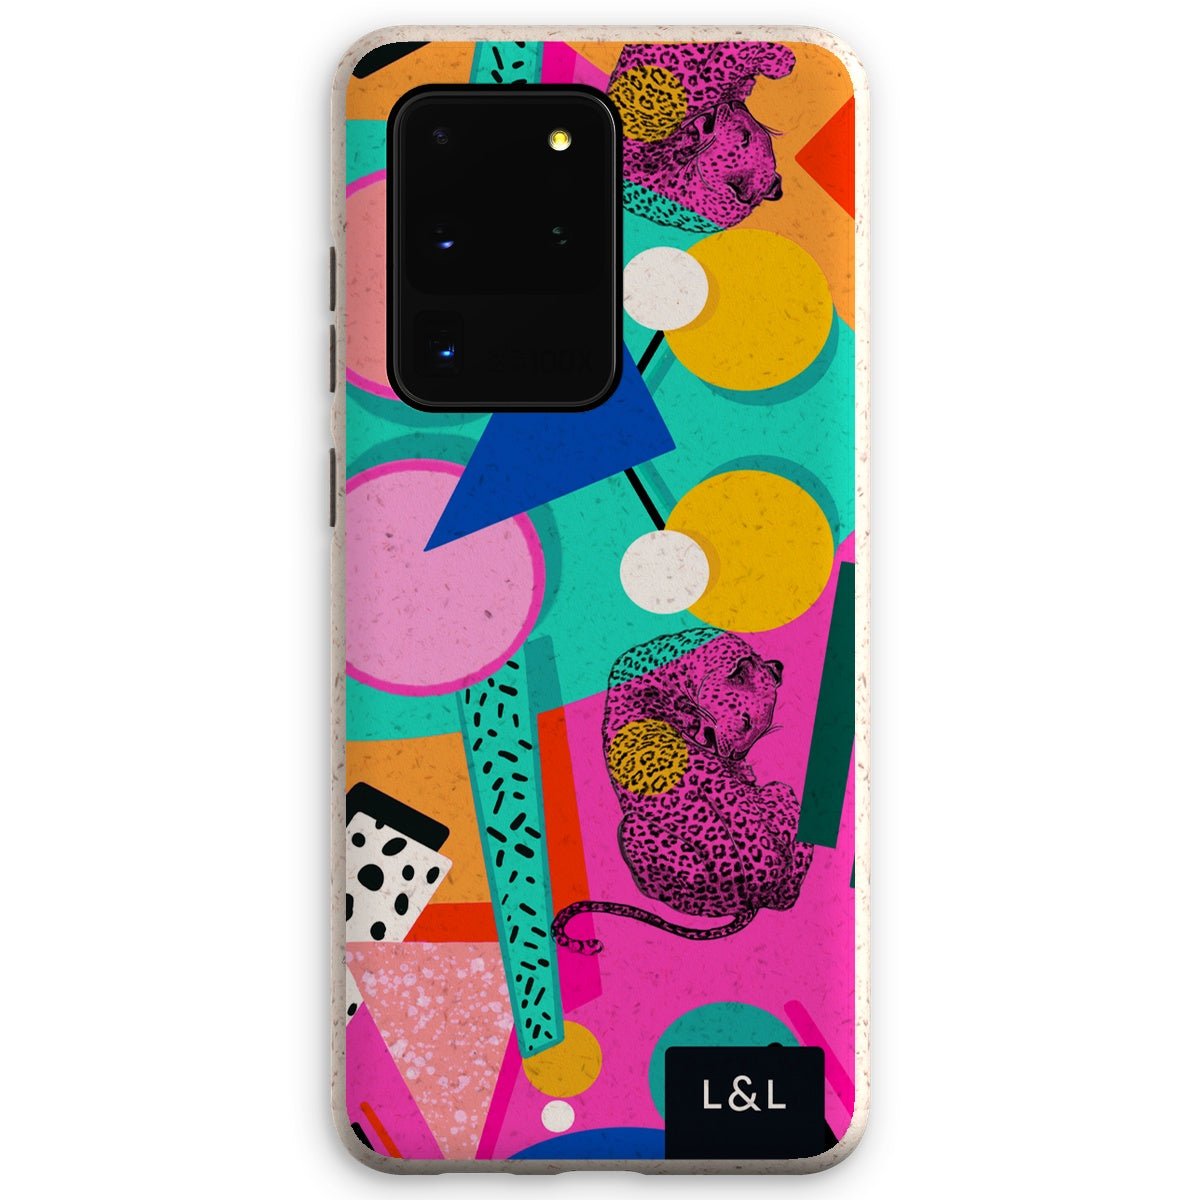 L&L Chic Eco Phone Case - Loam & Lore